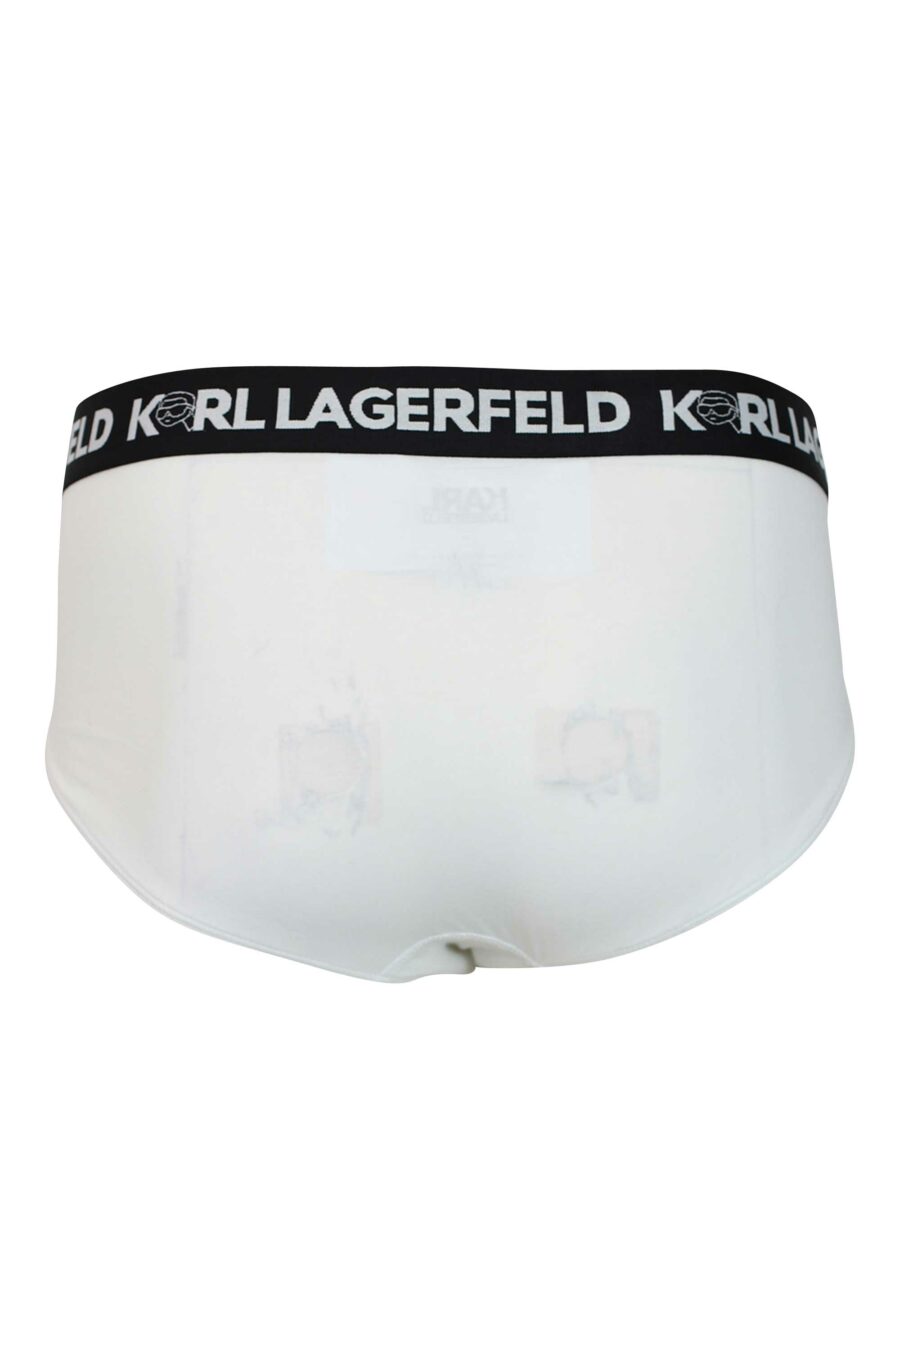 Pack de tres calzoncillos negros y blancos con logo "karl" en cinturilla - 8720744054627 2